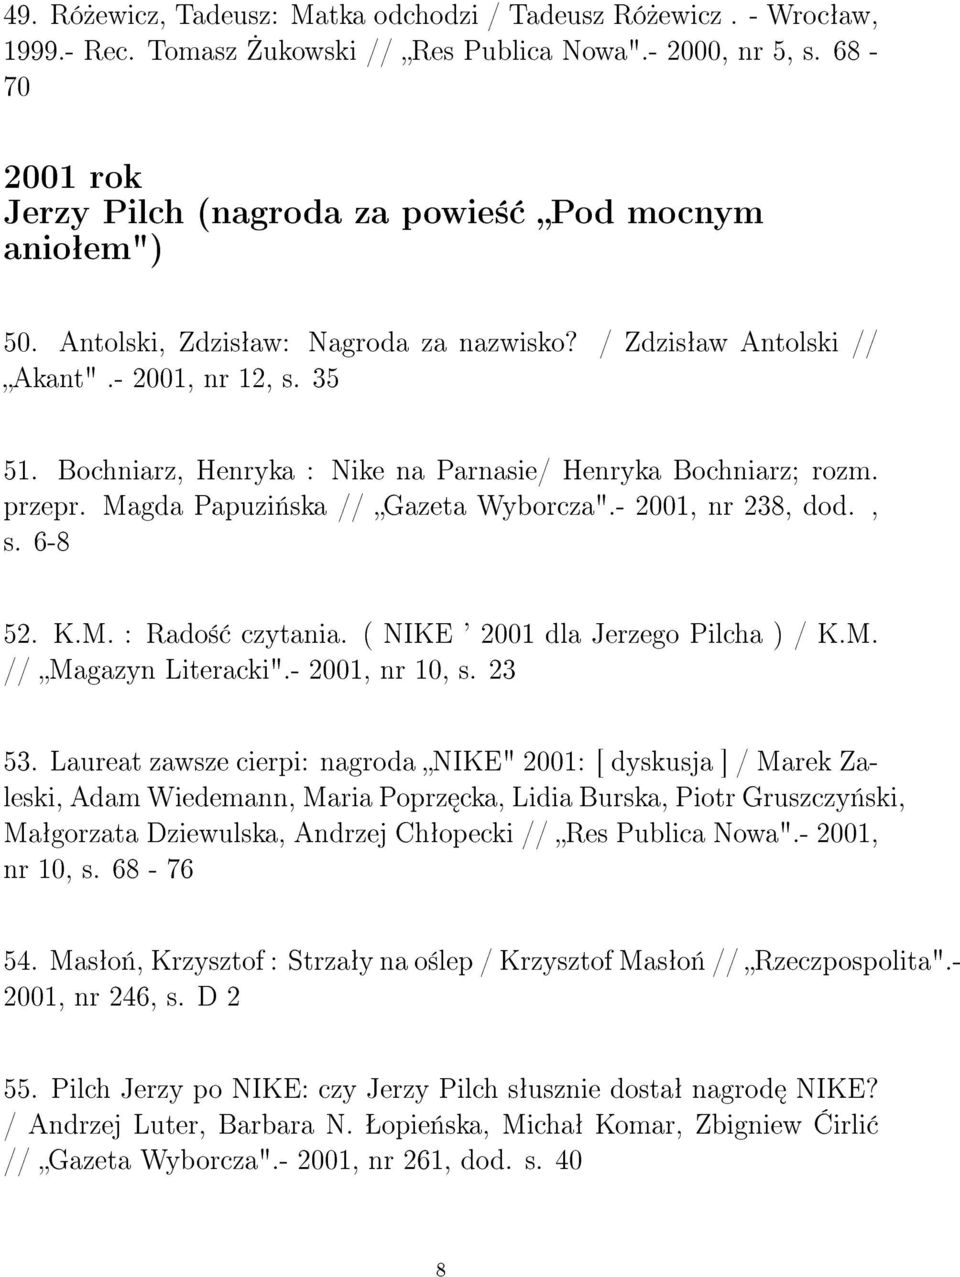 Bochniarz, Henryka : Nike na Parnasie/ Henryka Bochniarz; rozm. przepr. Magda Papuzi«ska // Gazeta Wyborcza".- 2001, nr 238, dod., s. 6-8 52. K.M. : Rado± czytania.